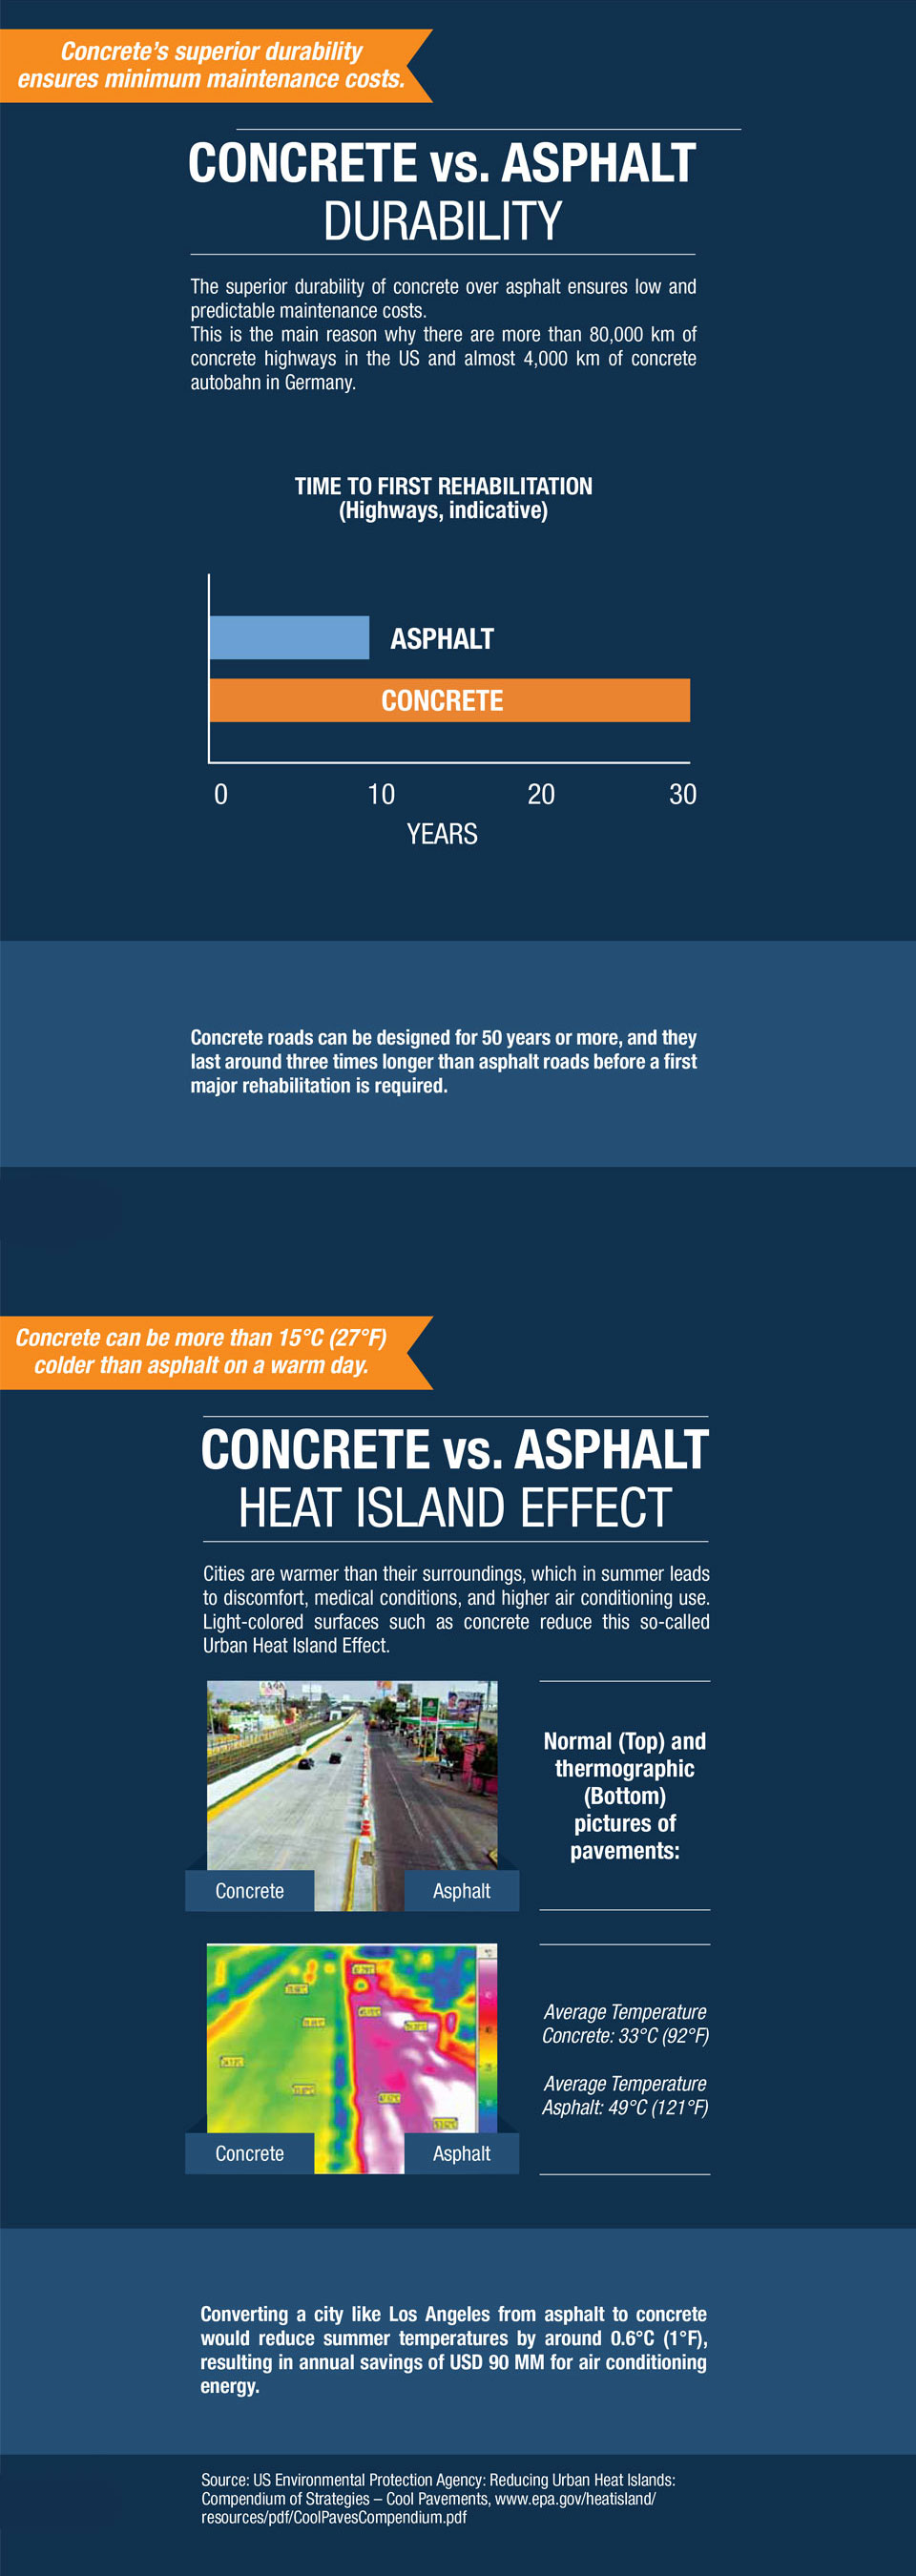 the image shows a comparison between concrete and asphalt